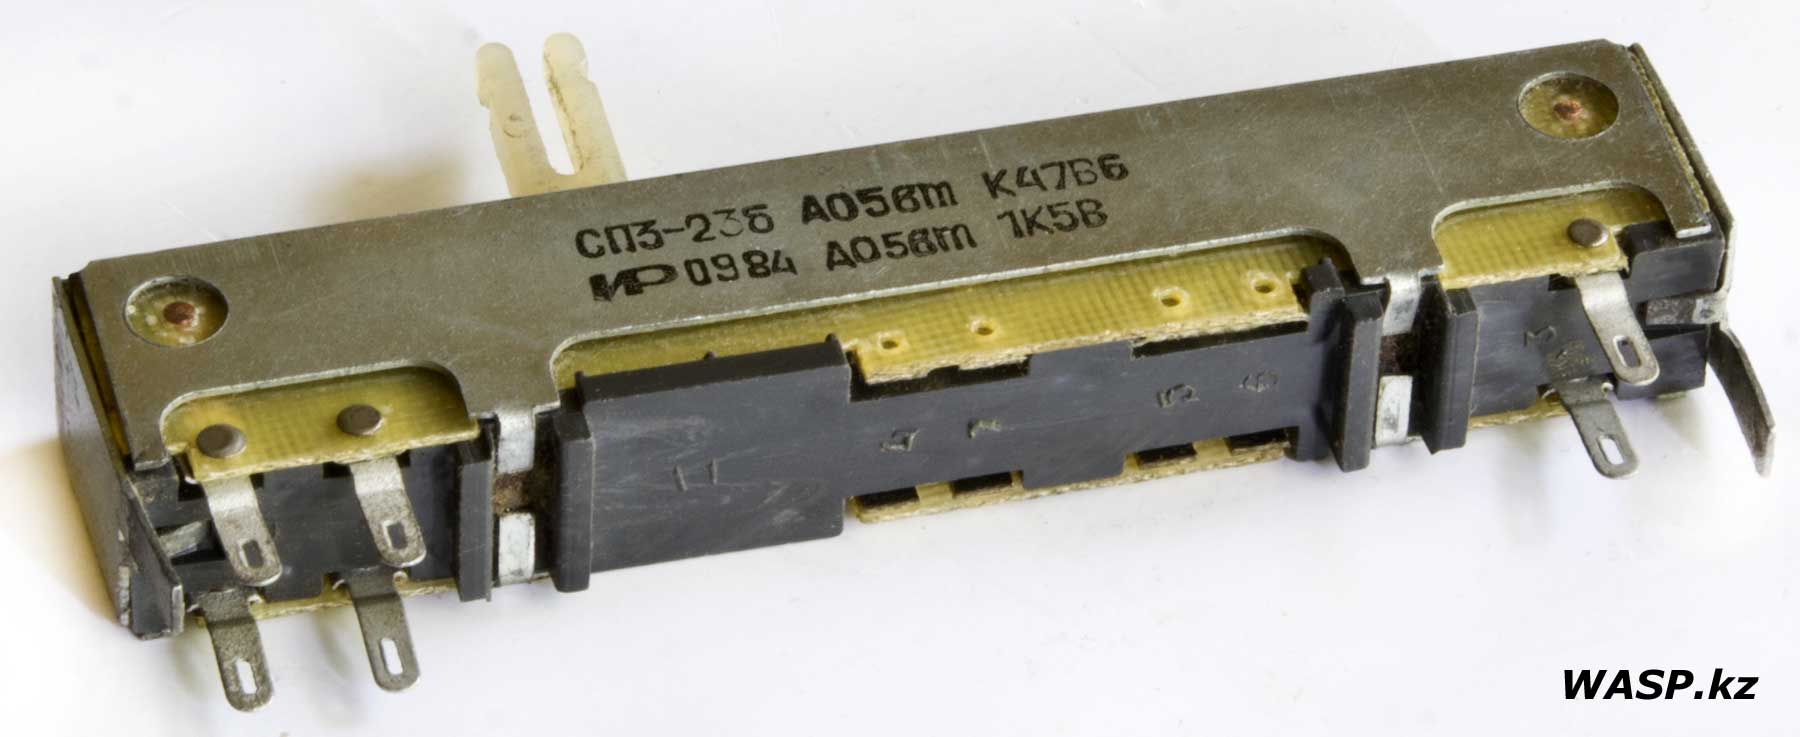 СП3-23б ползунковый переменный резистор, СССР, 1984 год, обзор